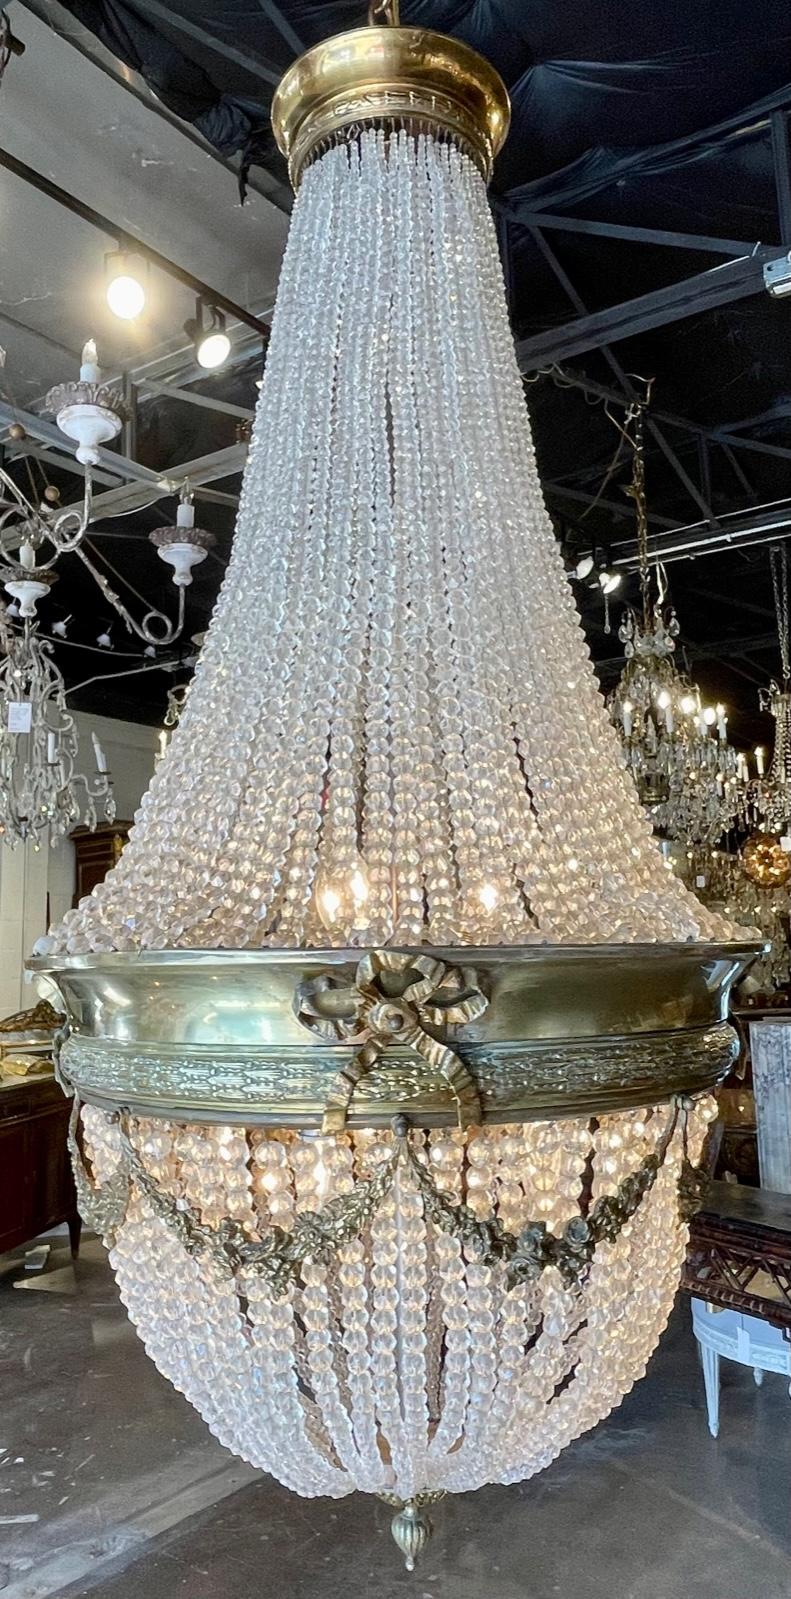 französisch Louis XVI-Stil 19. Jahrhundert vergoldete Bronze und Perlen Kristallkorb Kronleuchter. Um 1890. Der Kronleuchter wurde professionell neu verdrahtet, gereinigt und ist bereit zum Aufhängen. Inklusive passender Kette und Baldachin.